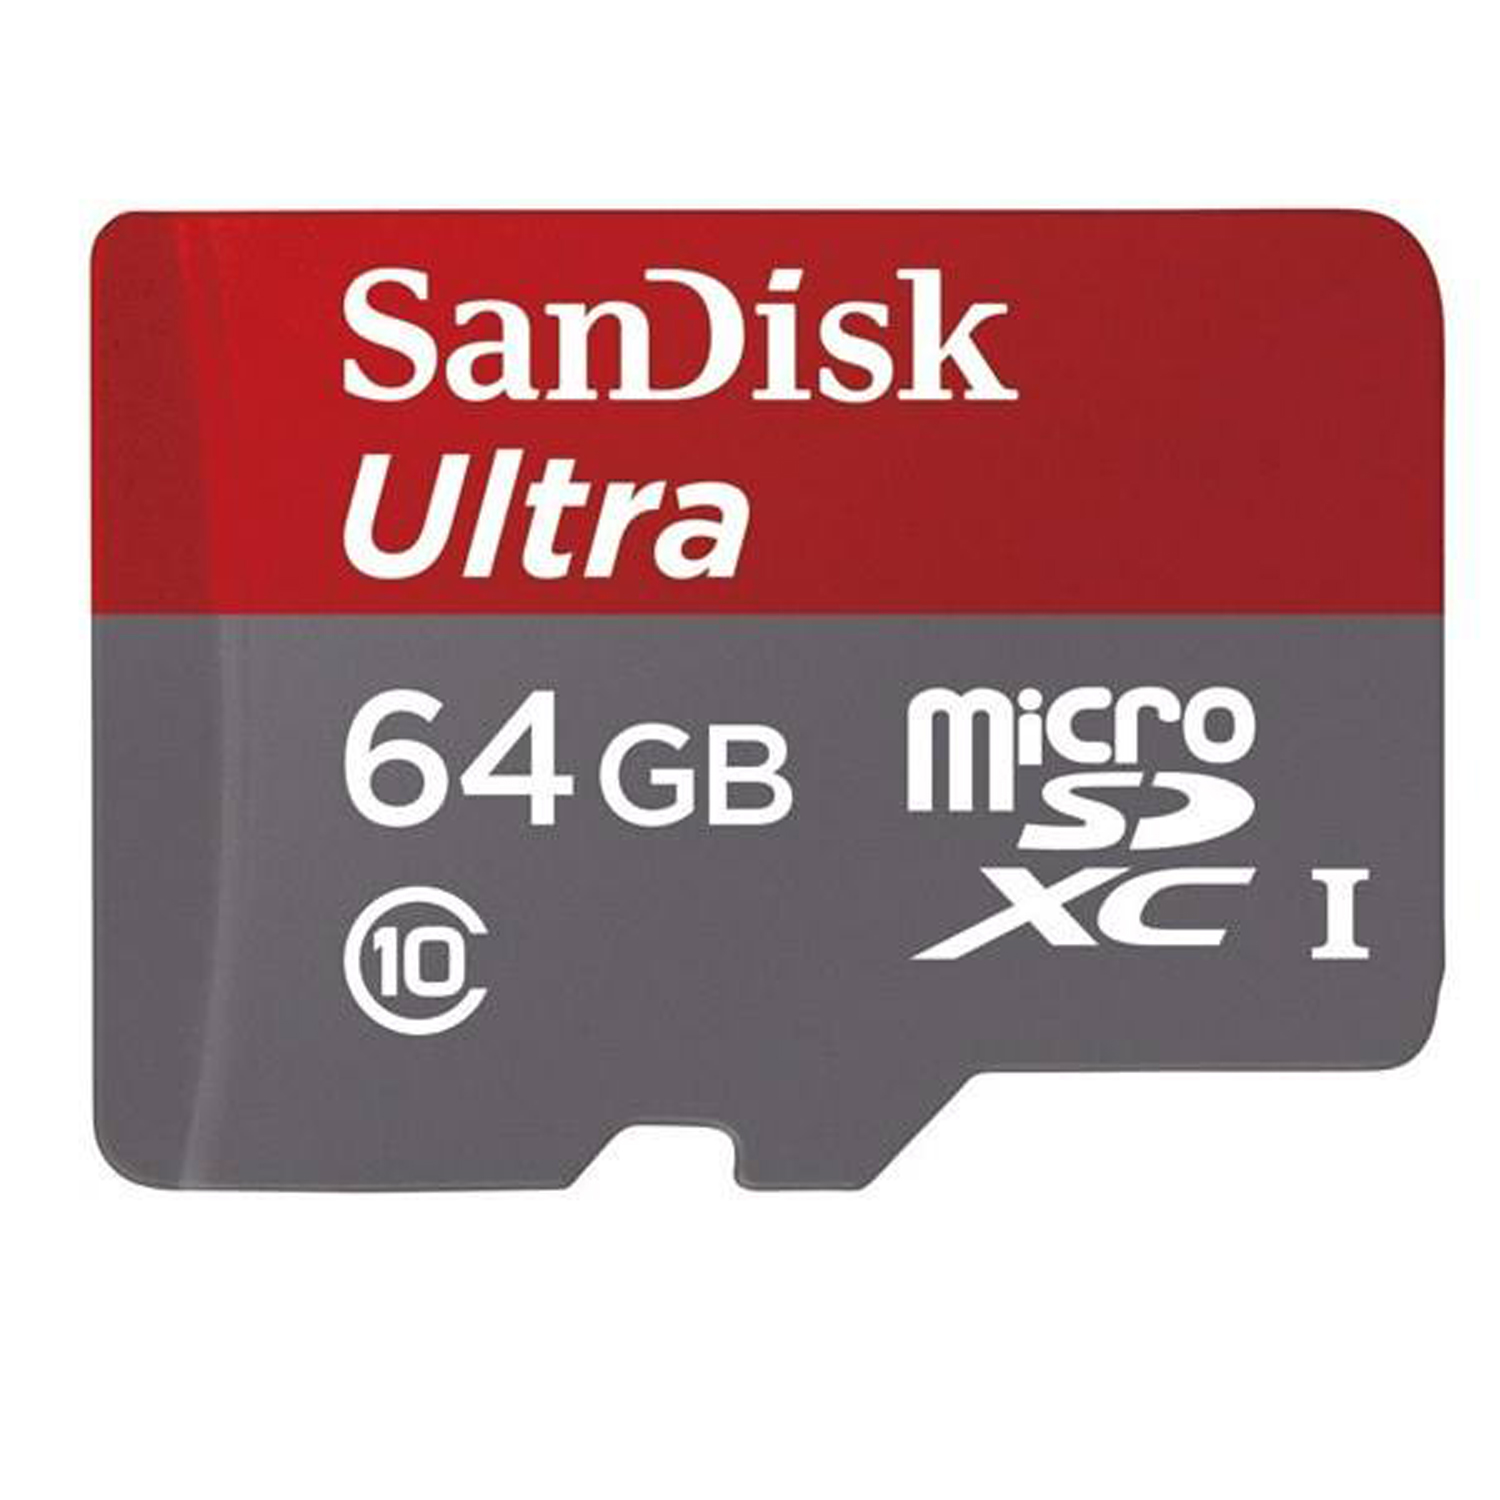 کارت حافظه microSDXC سن دیسک مدل A1 کلاس 10 استاندارد UHS-I سرعت 80MBps ظرفیت 64 گیگابایت